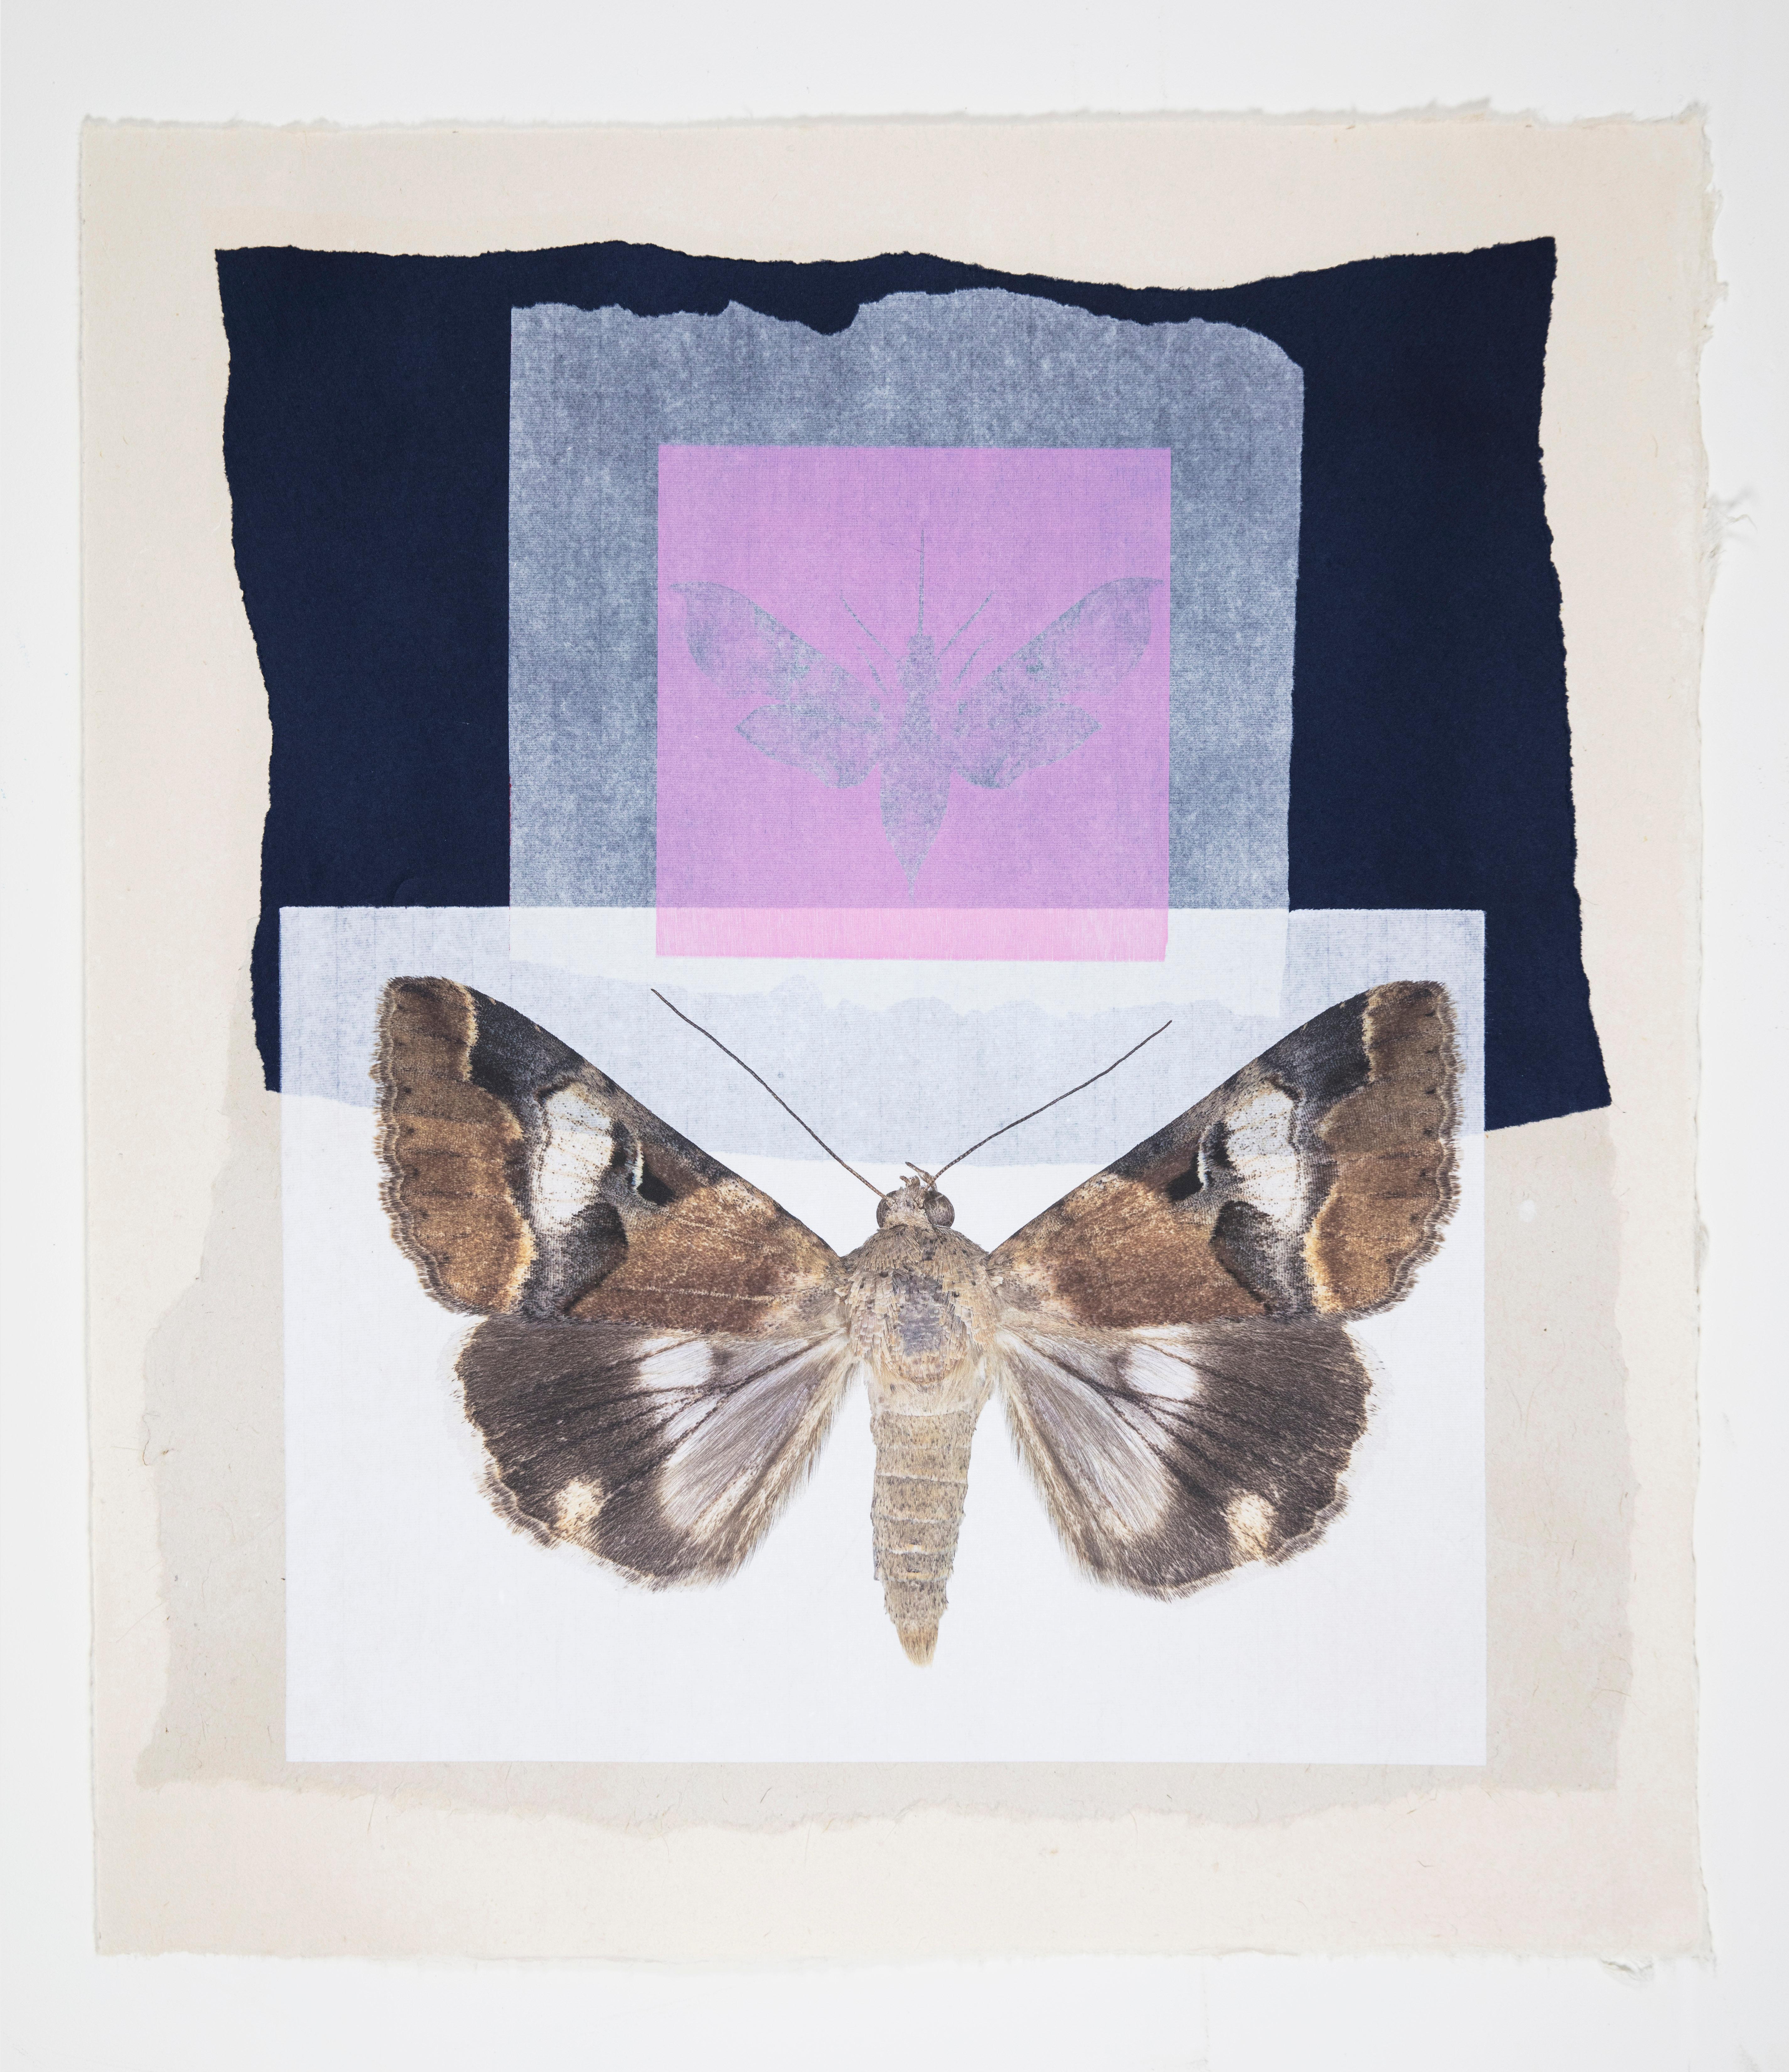 Figurative Print Joseph Scheer - Monotype contemporain encadré d'un collage de motifs papillons et de motifs naturels roses et bleus